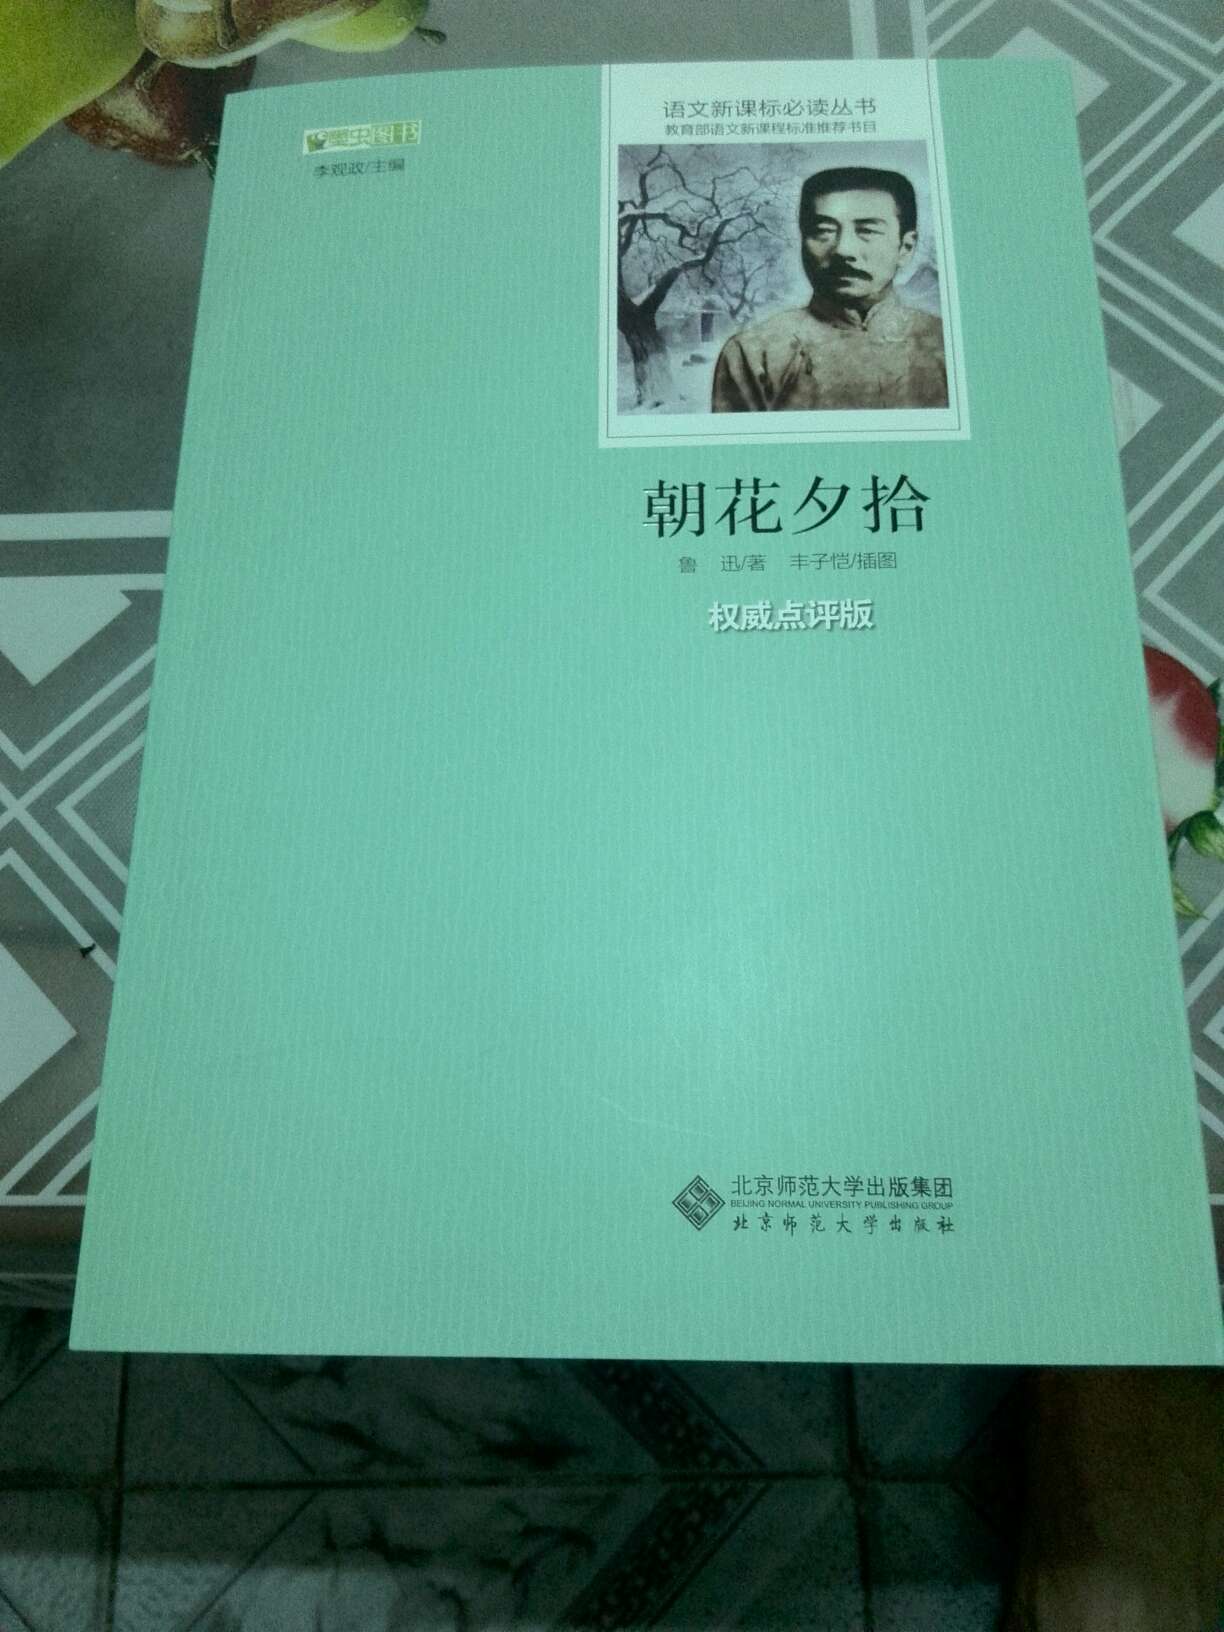 北京师范大学出版，纸质好，虽然是自营调货，但相当快服务O K。好，给五星好评。。。。